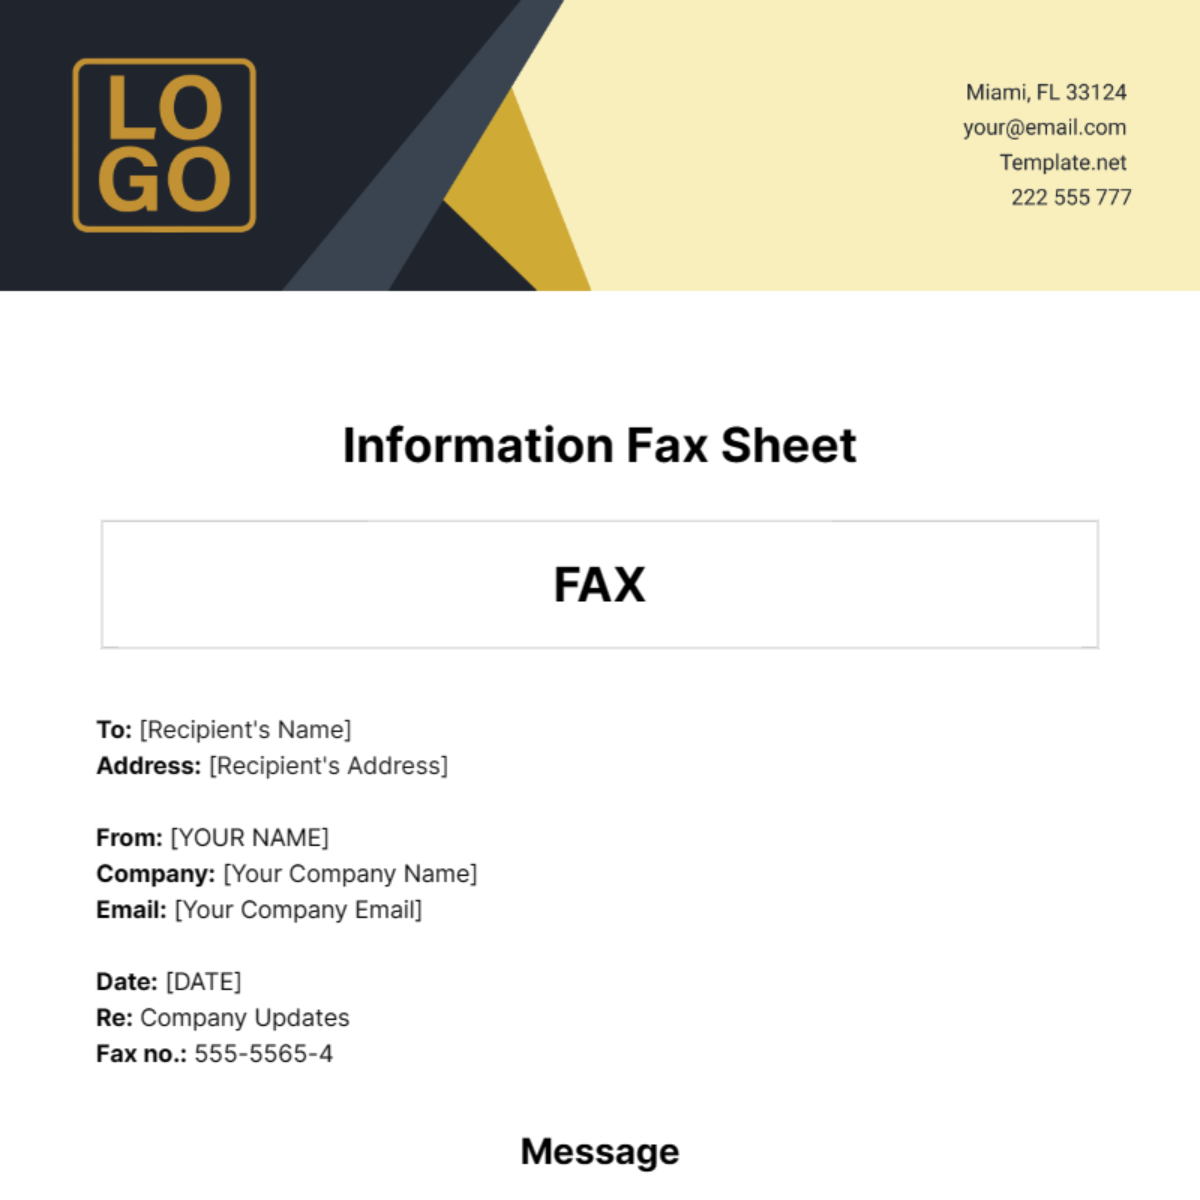 Information Fax Sheet Template